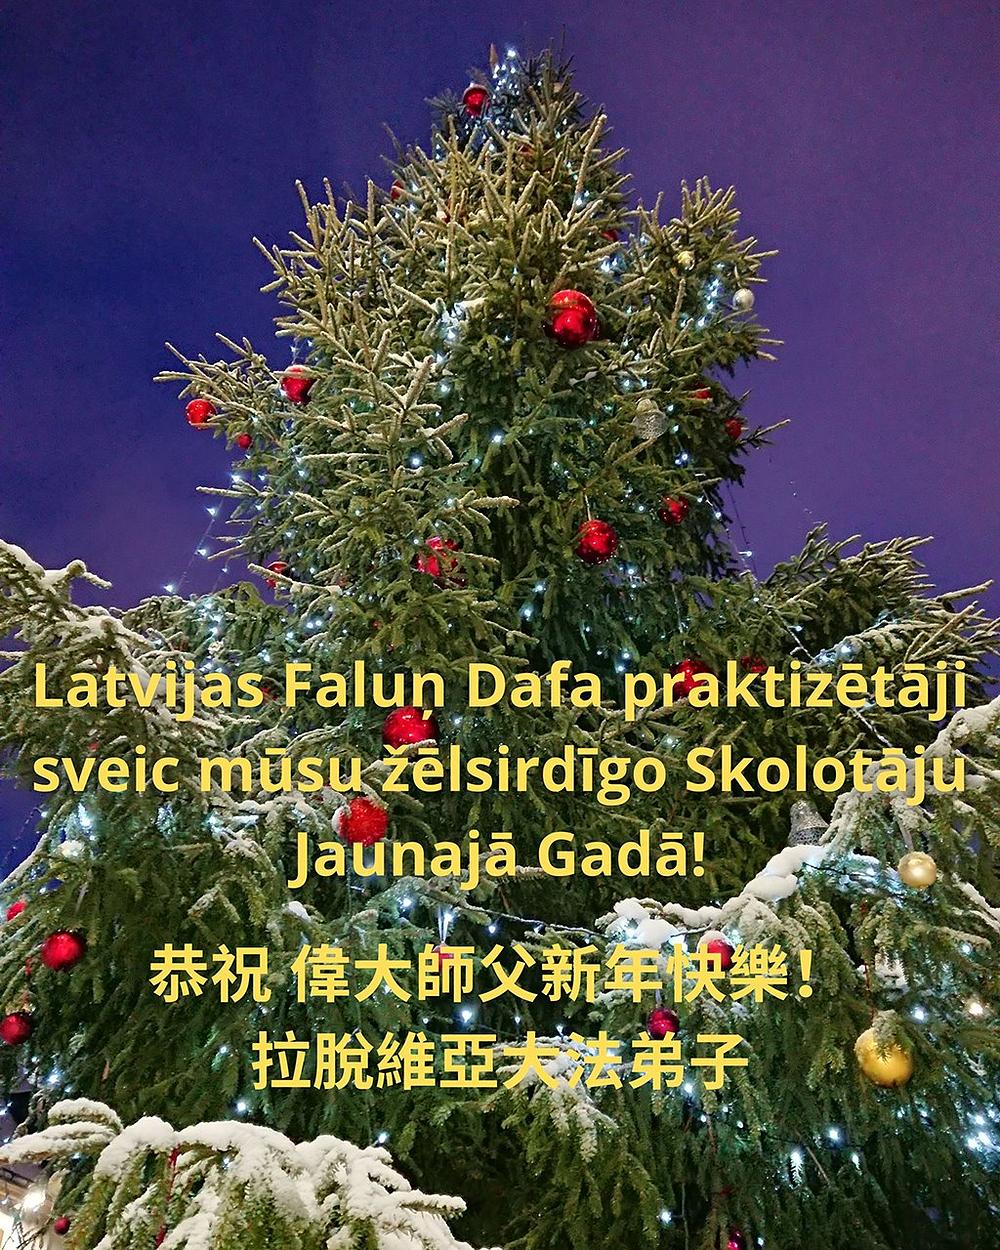 Novogodišnje čestitke praktikanata iz Latvije